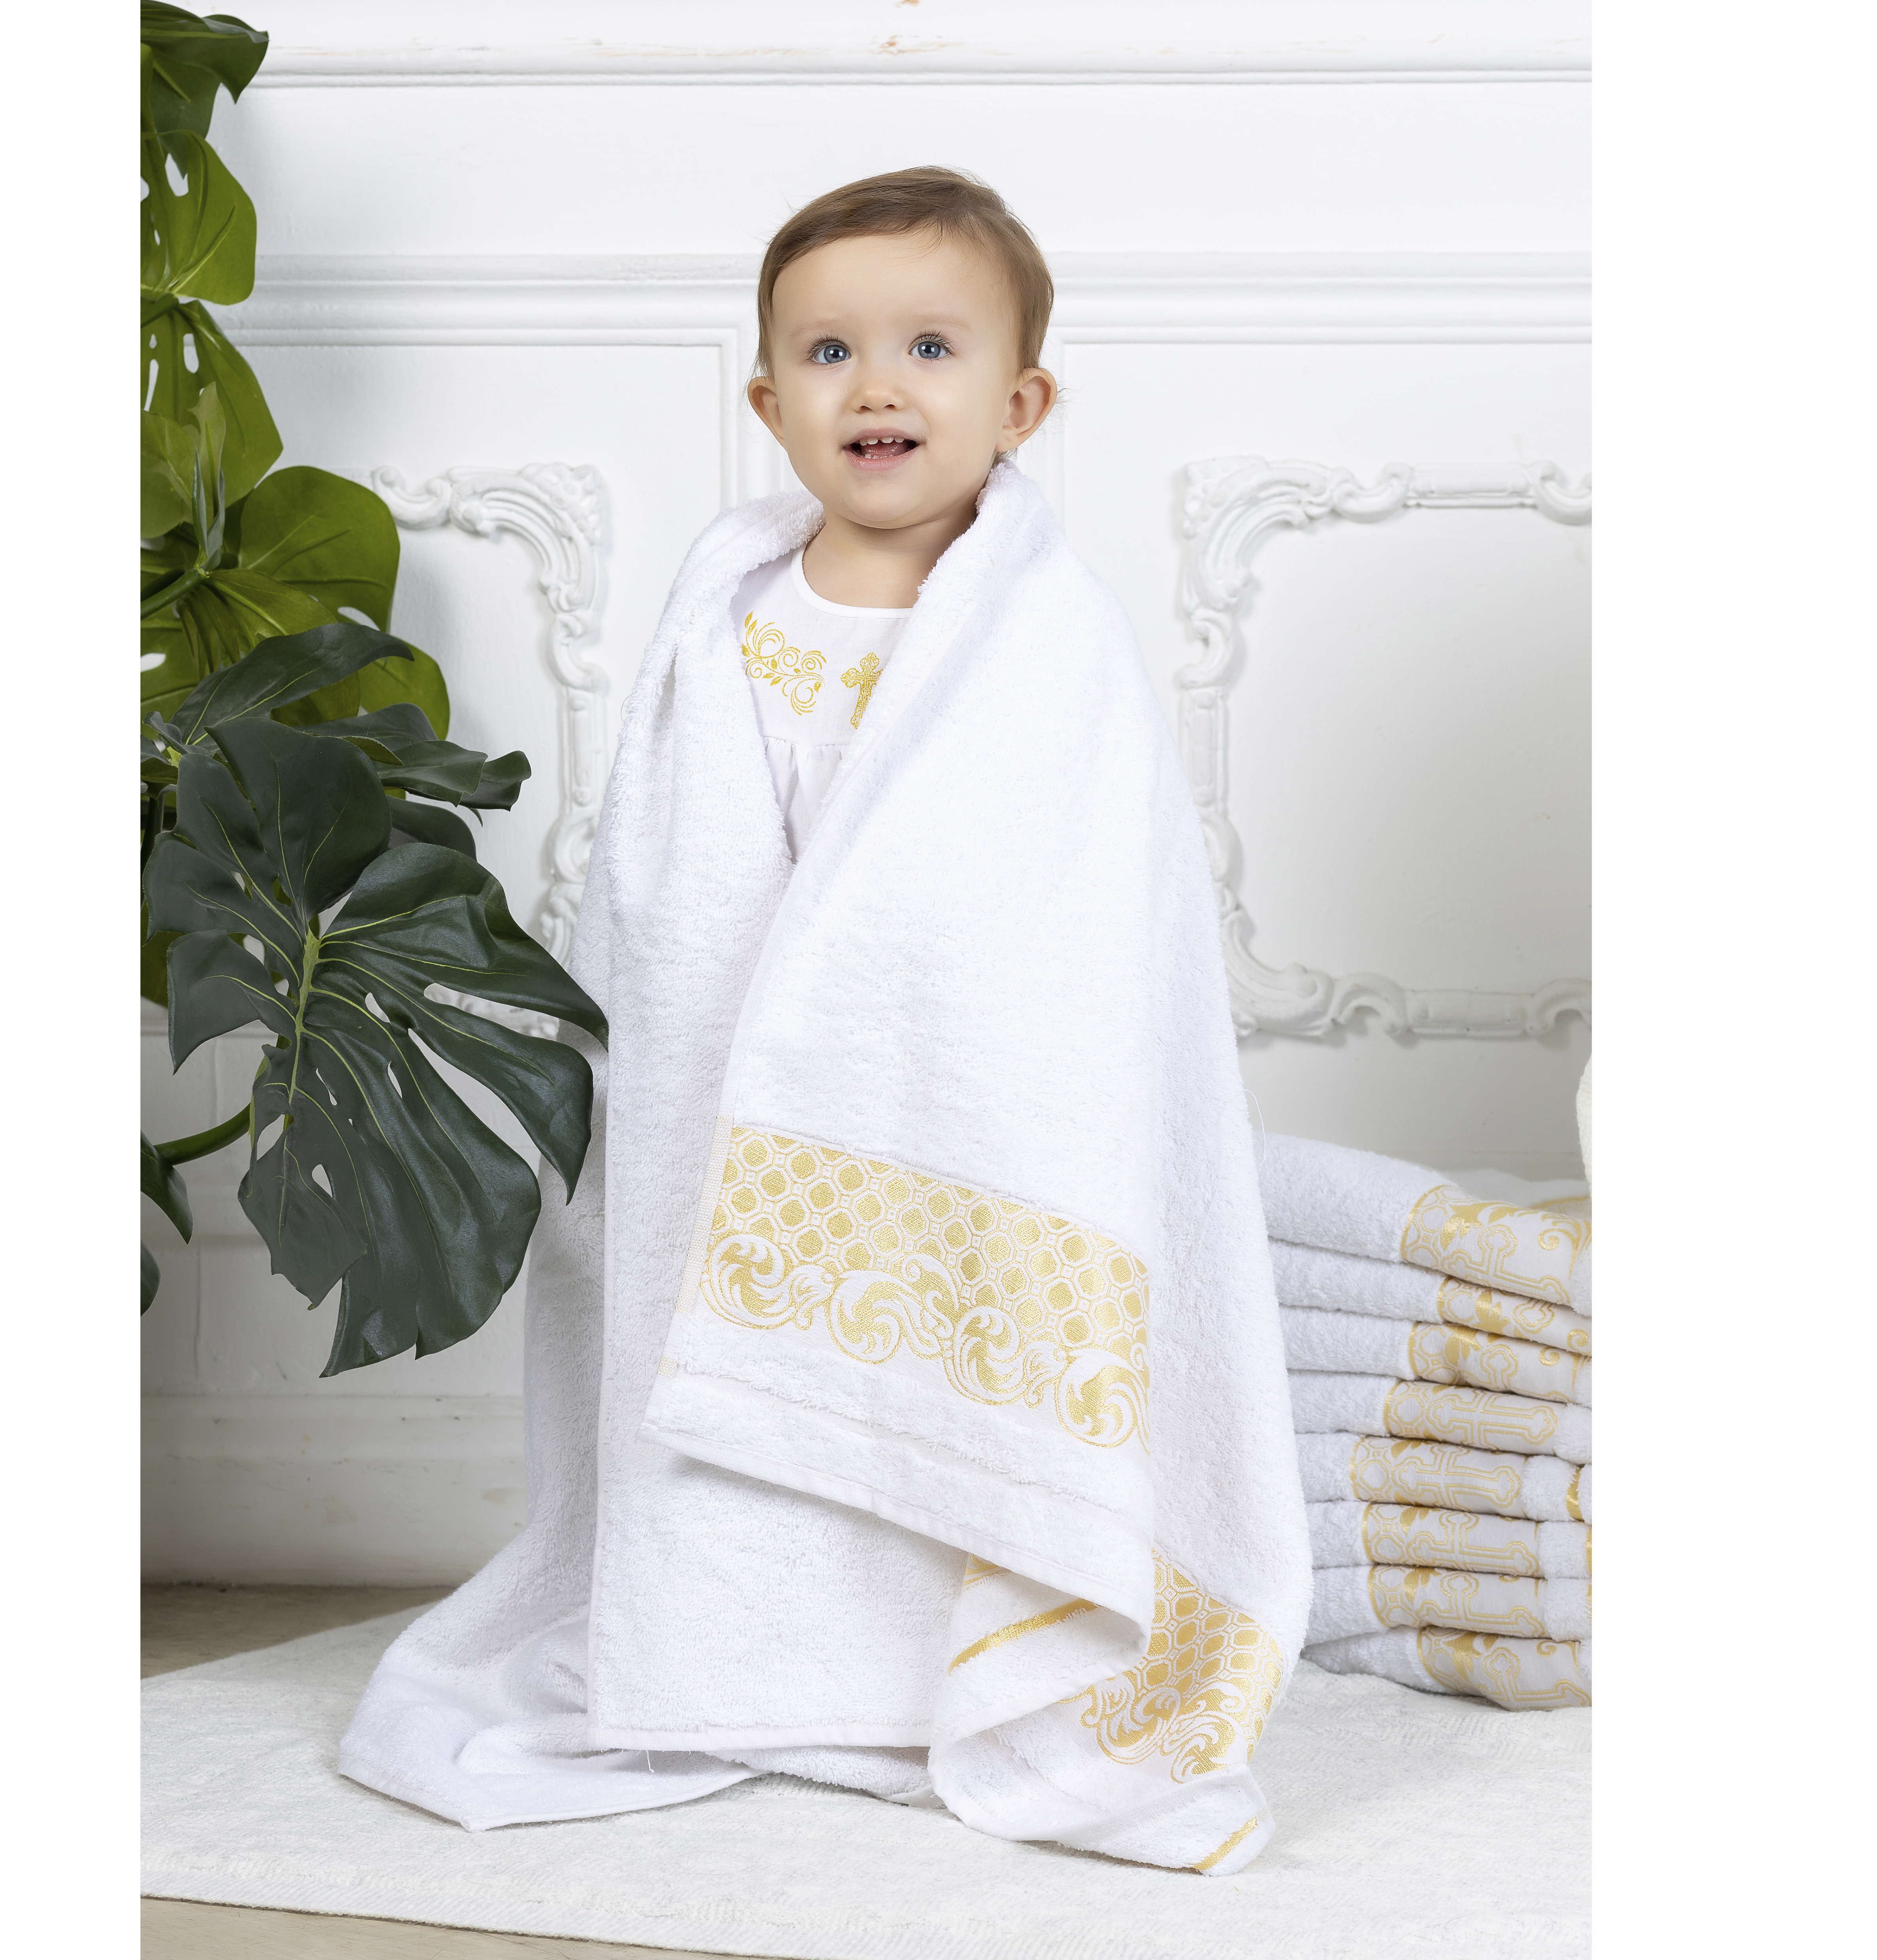 Полотенце крестильное Осьминожка махровое с вышивкой 138*69см - фото 3